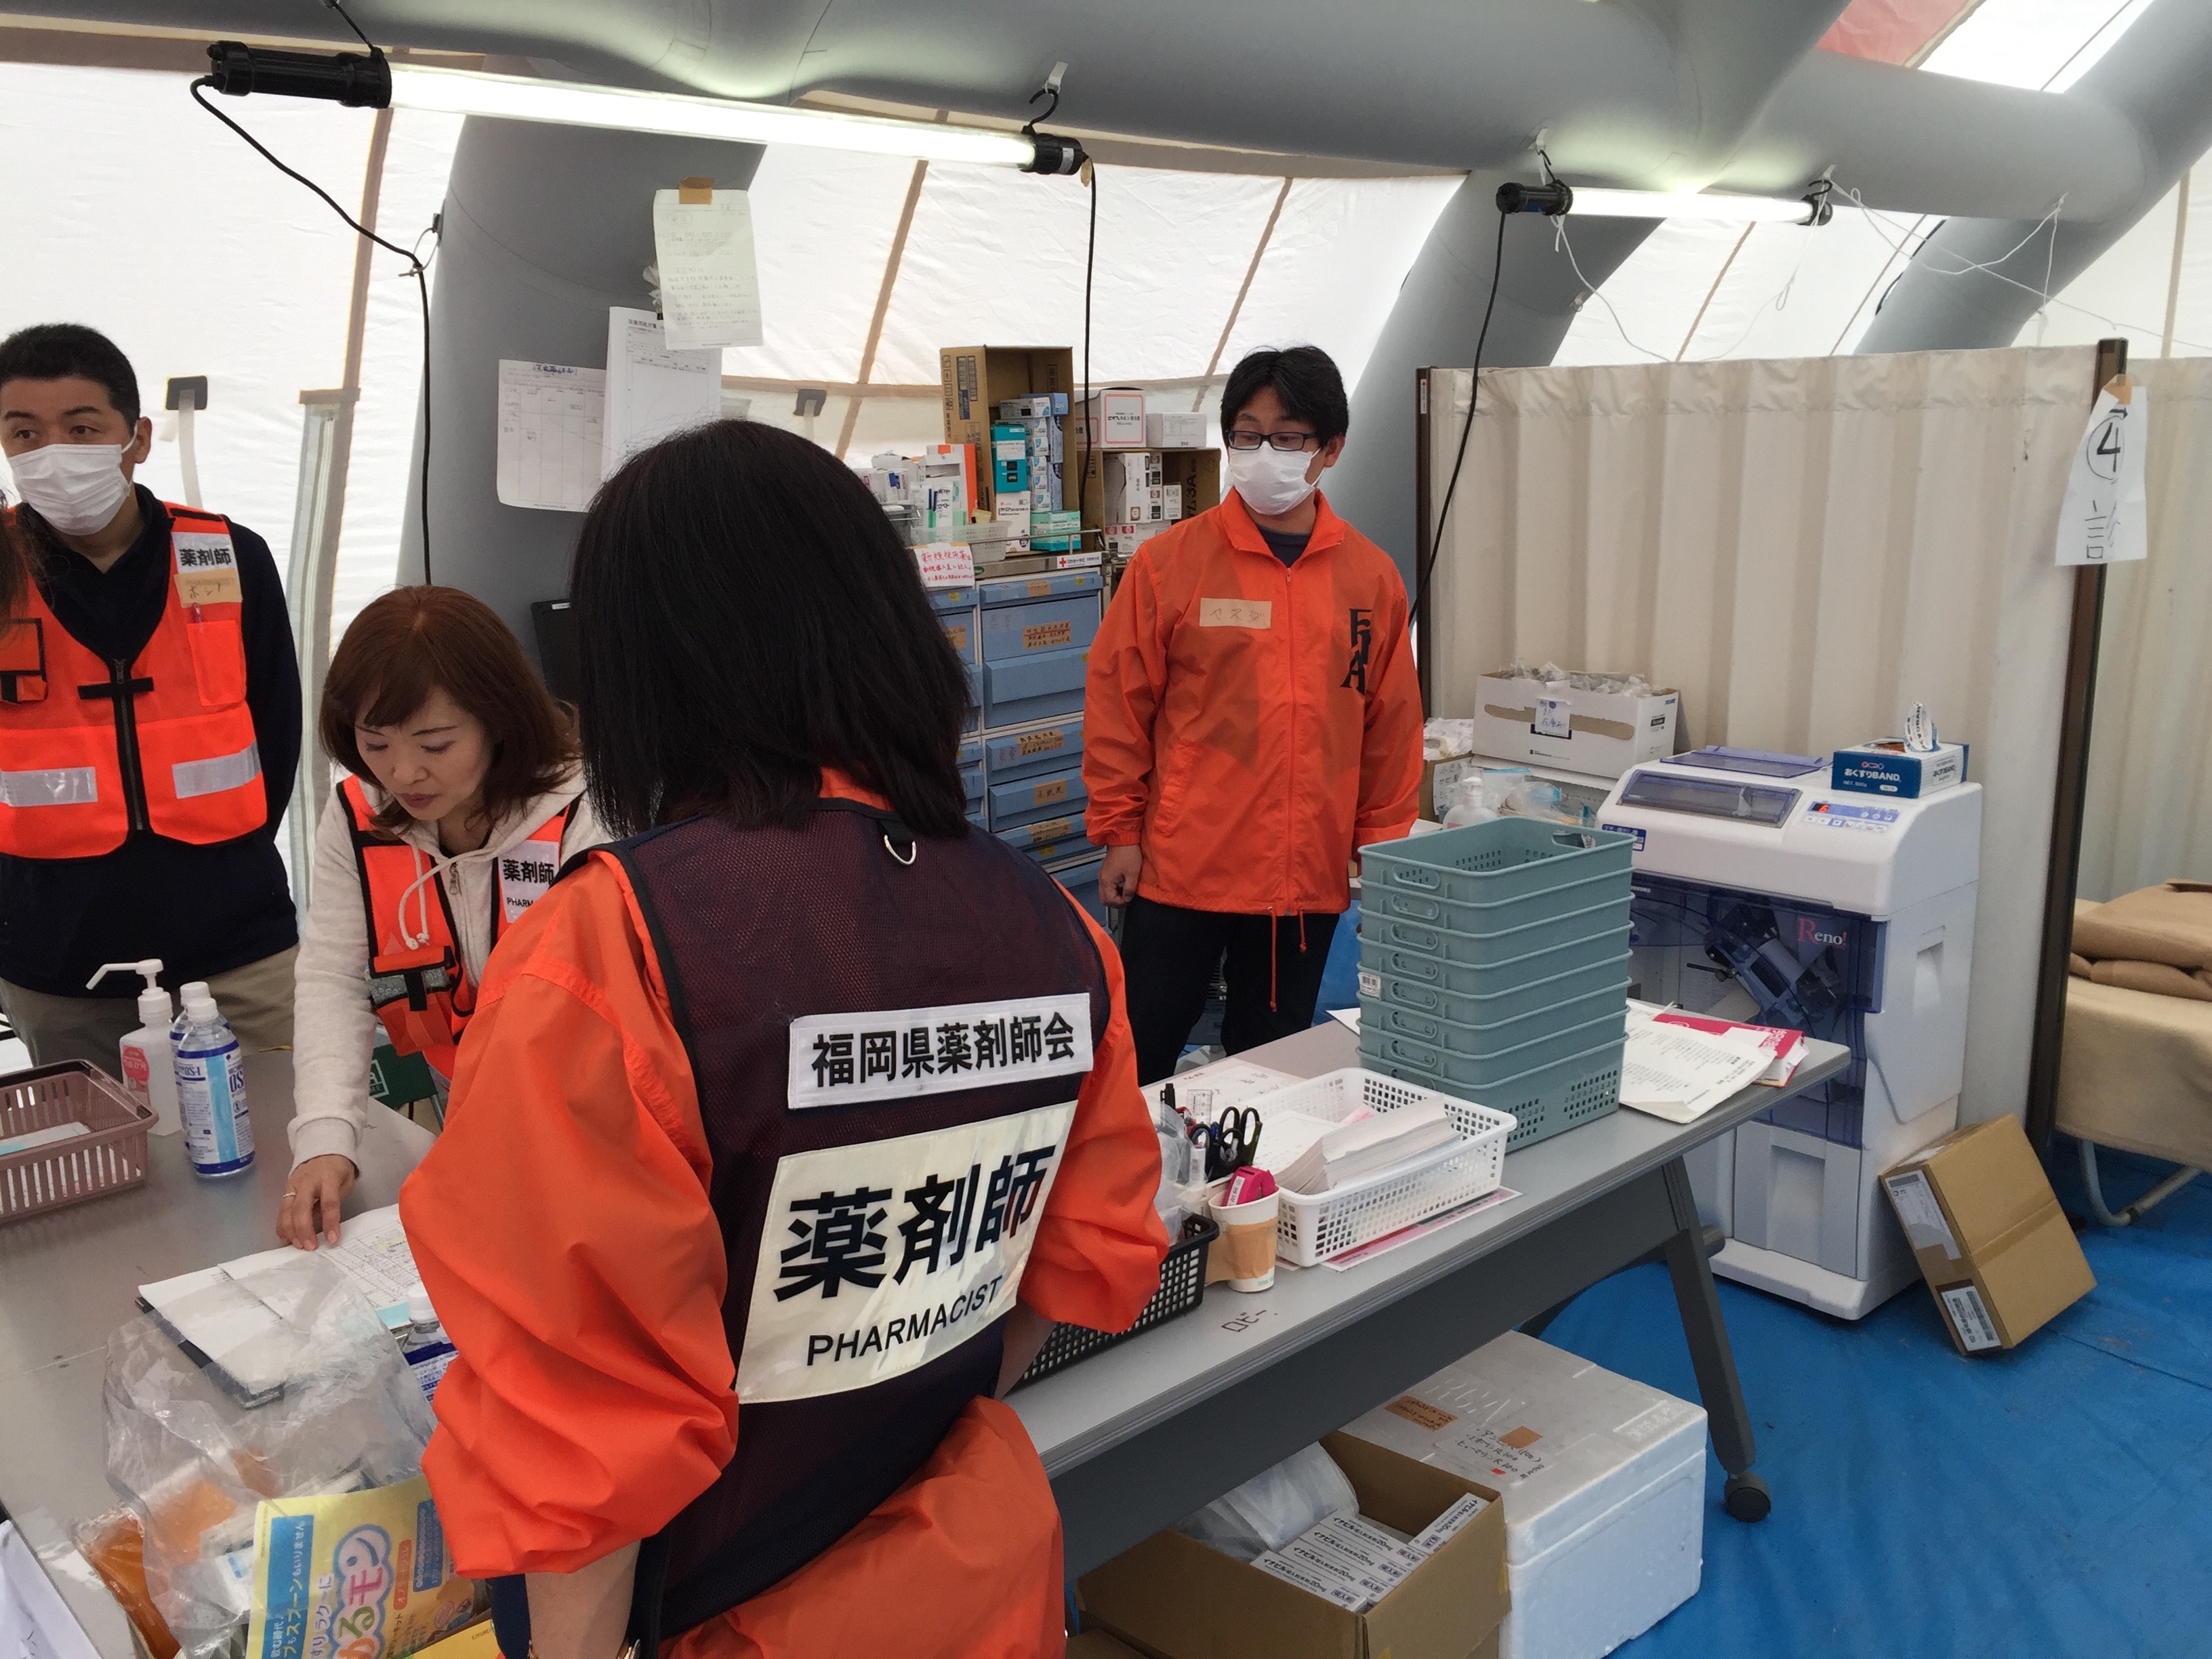 熊本地震災害派遣薬剤師 有限会社スマイル薬局